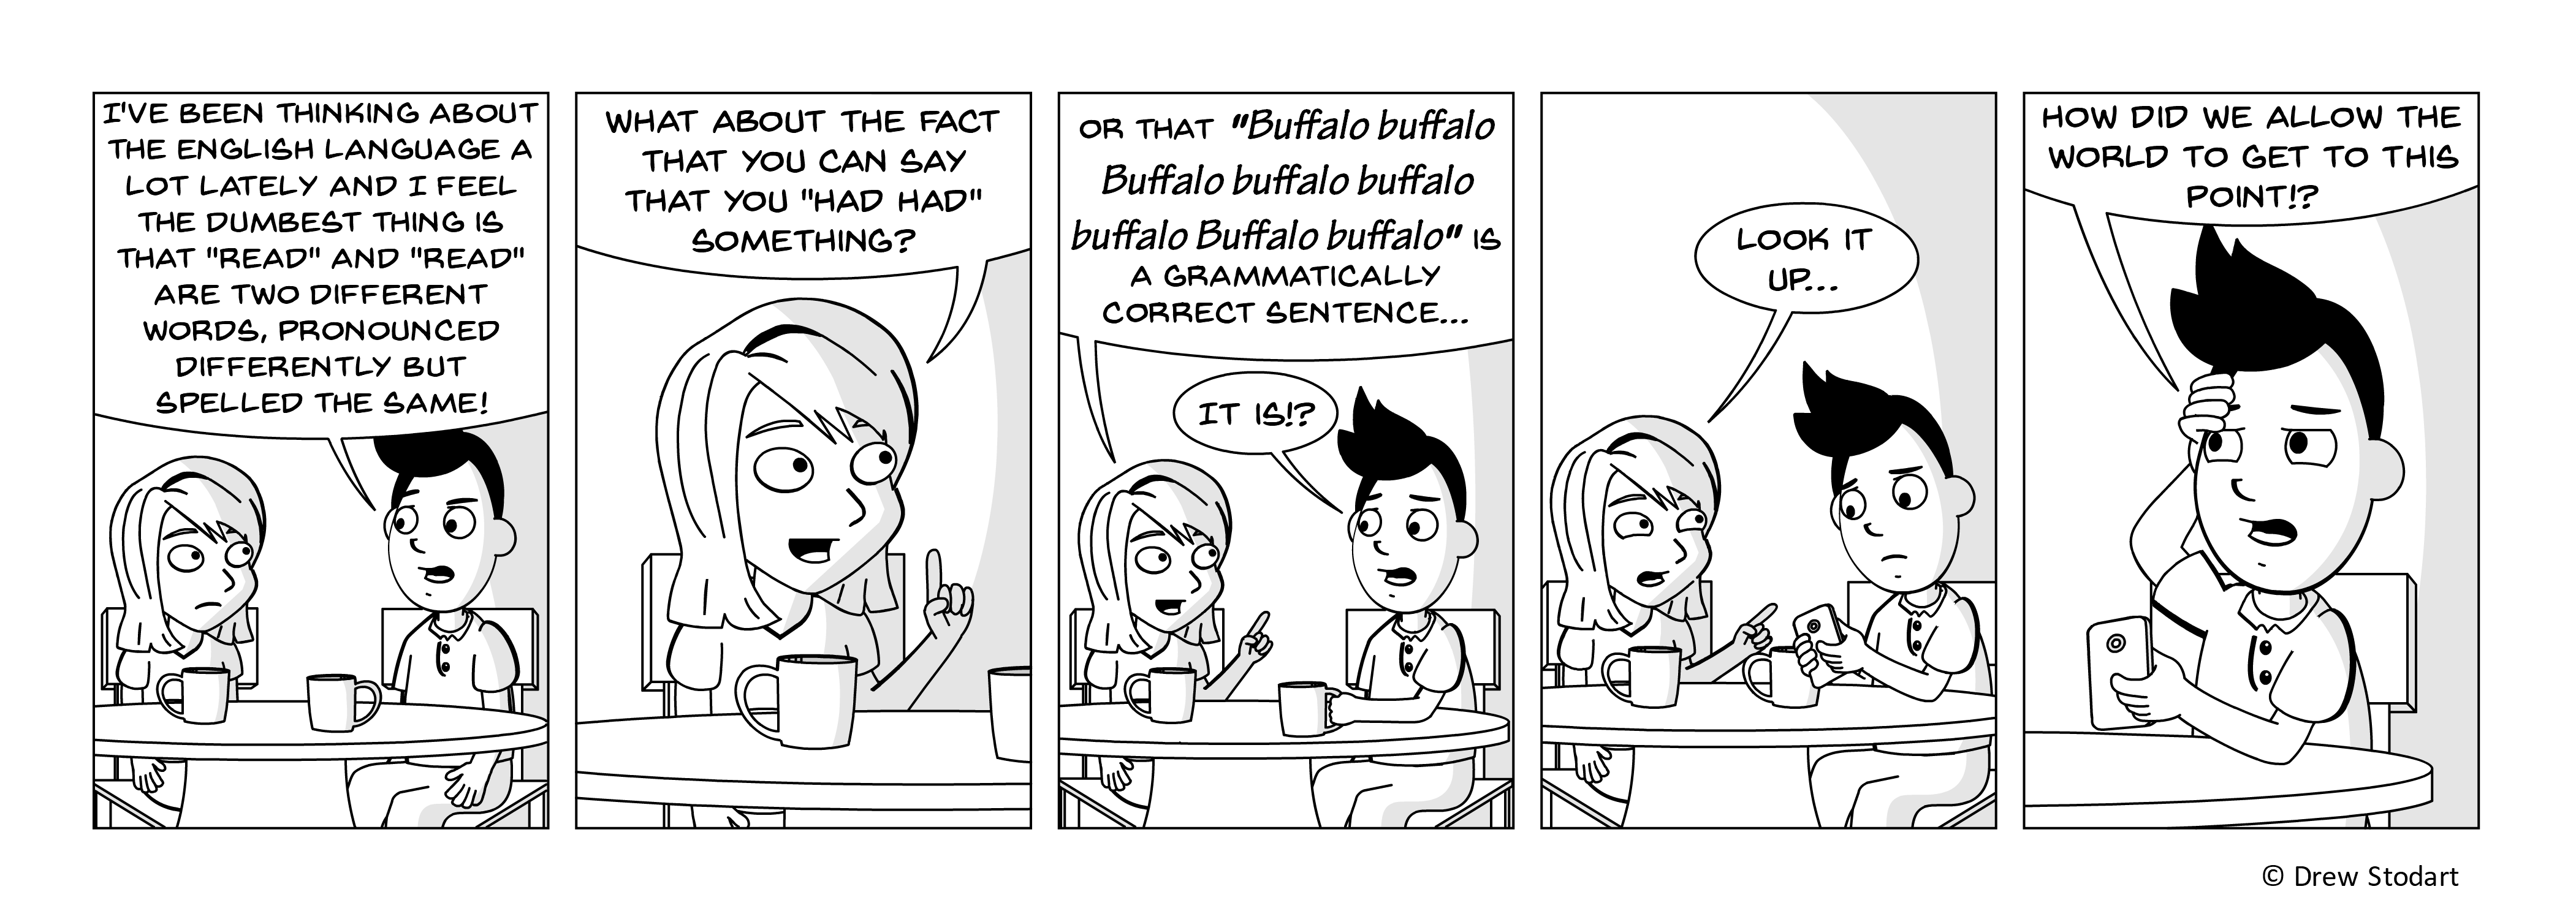 Average Joe 54 – Buffalo buffalo Buffalo buffalo buffalo buffalo Buffalo buffalo